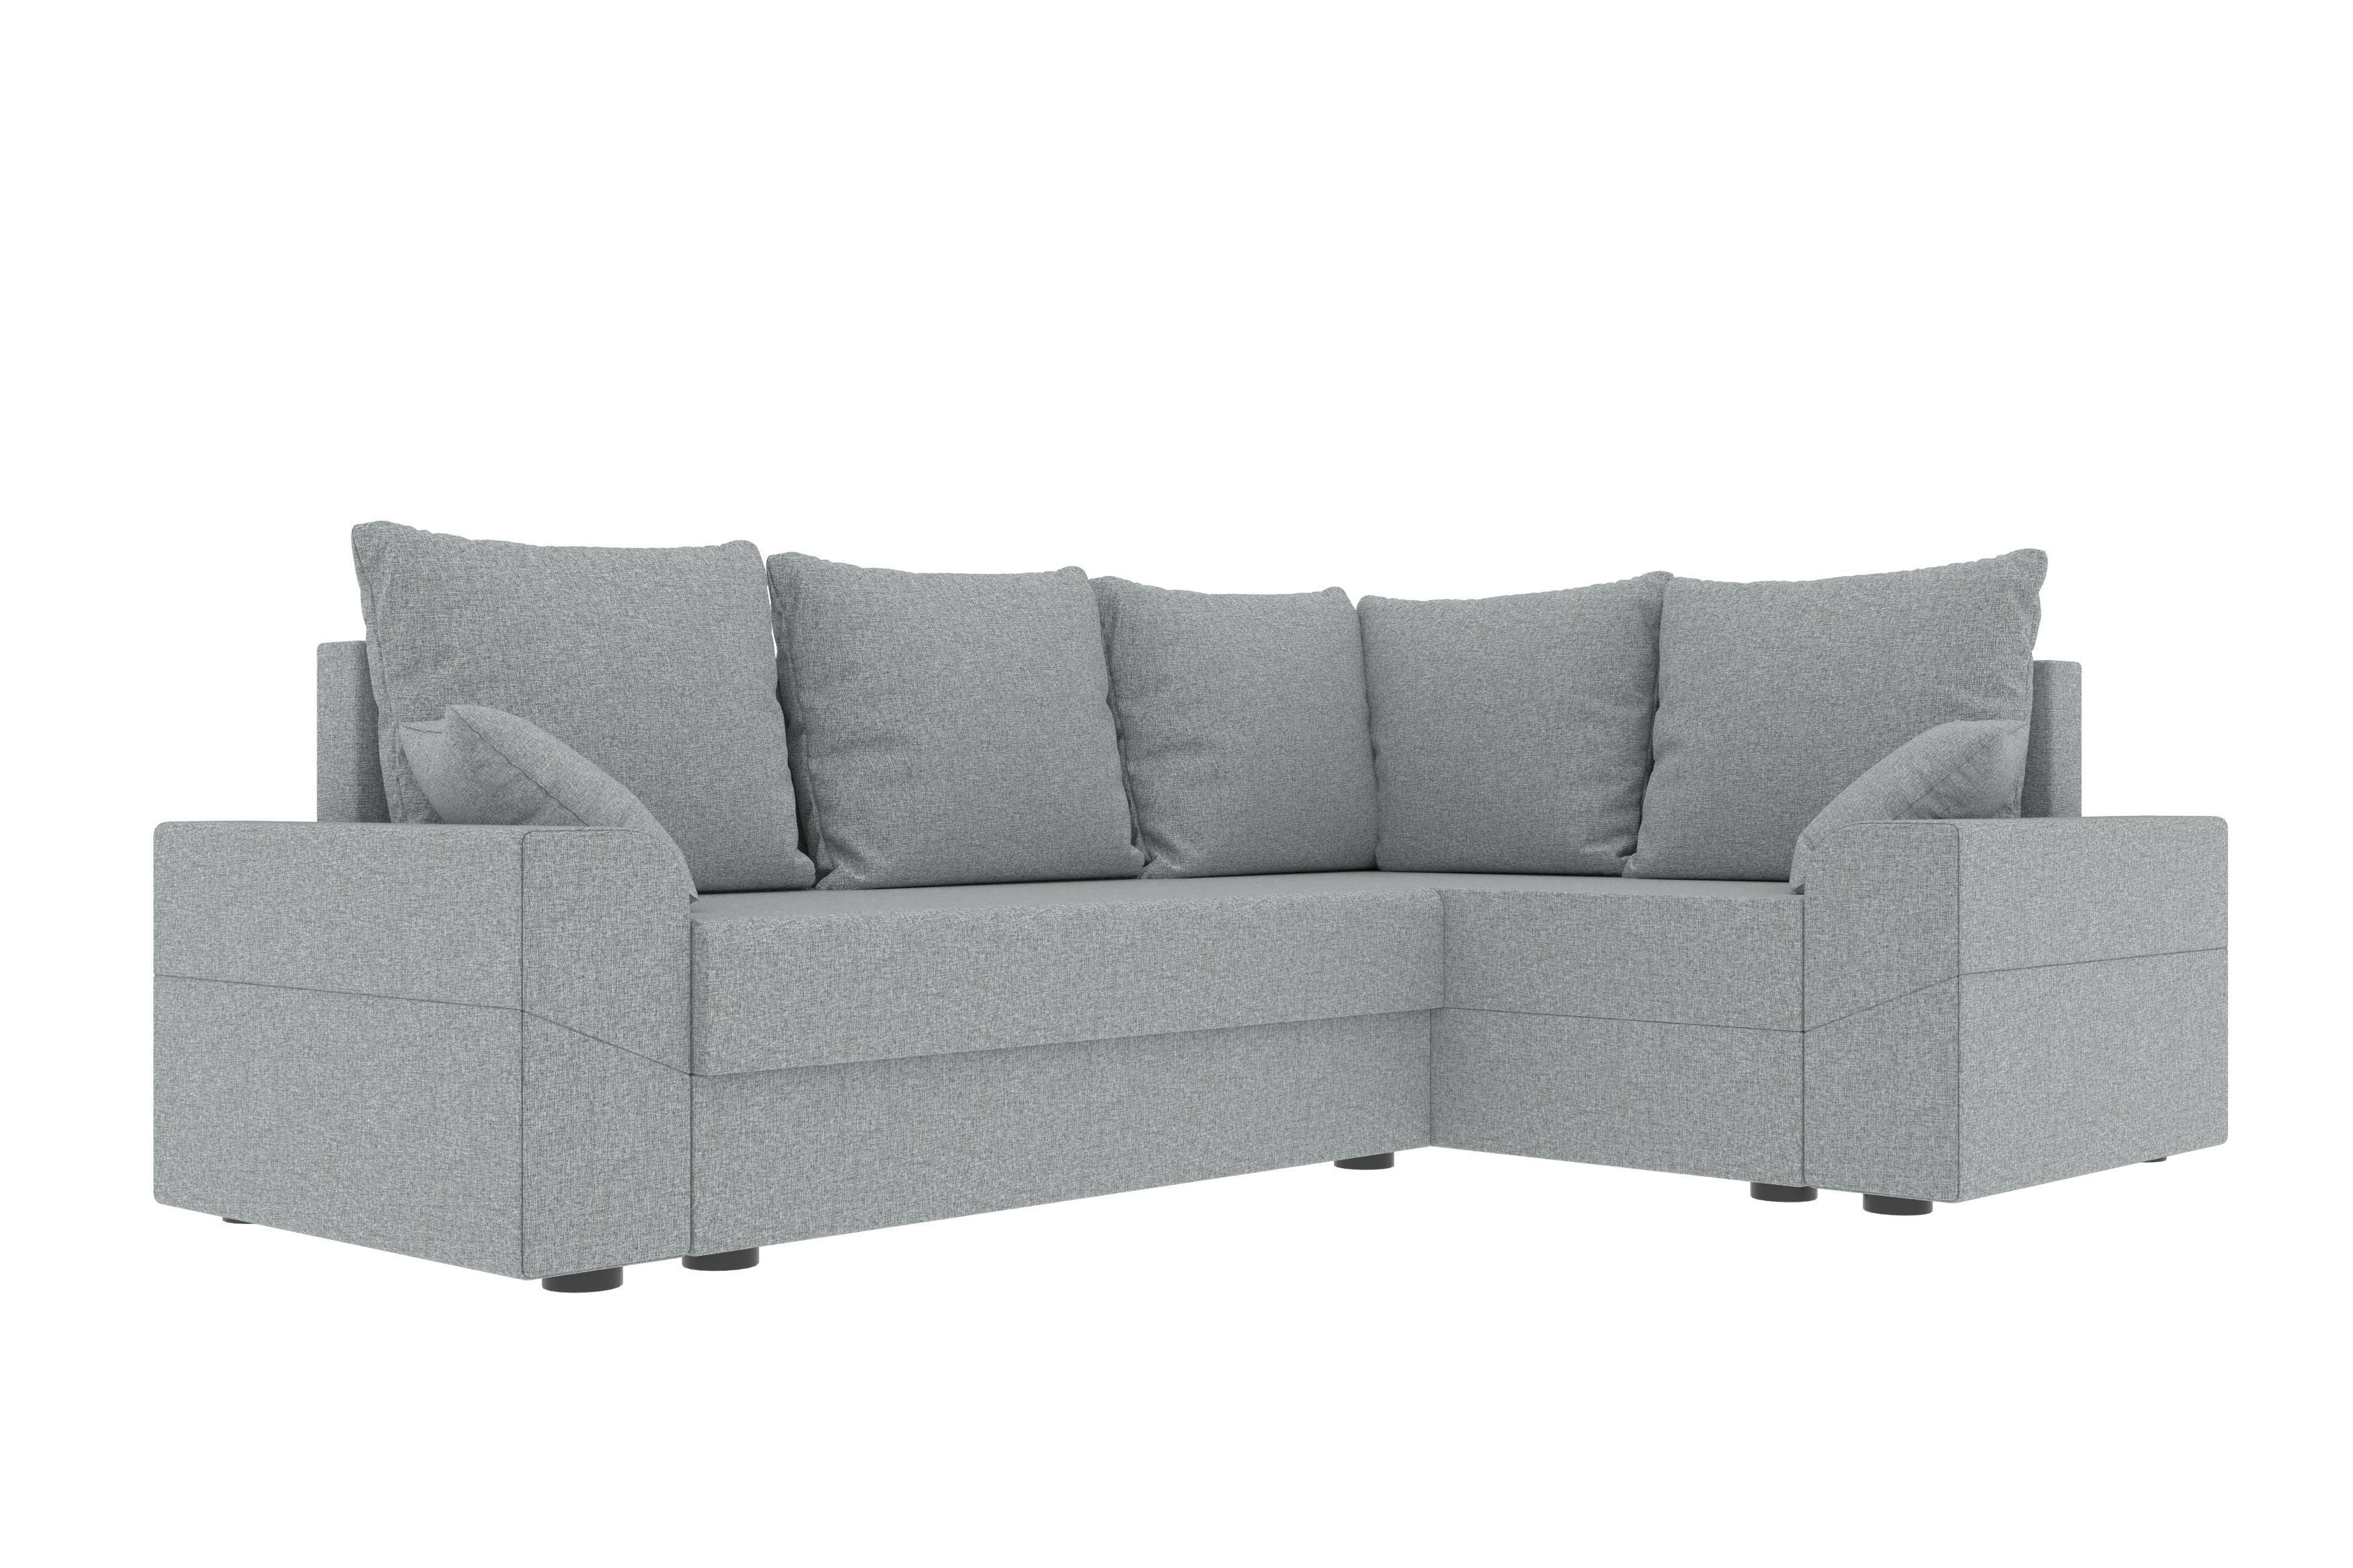 Bettfunktion, Design Ecksofa mit Montero, mit Bettkasten, Stylefy L-Form, Eckcouch, Sofa, Sitzkomfort, Modern